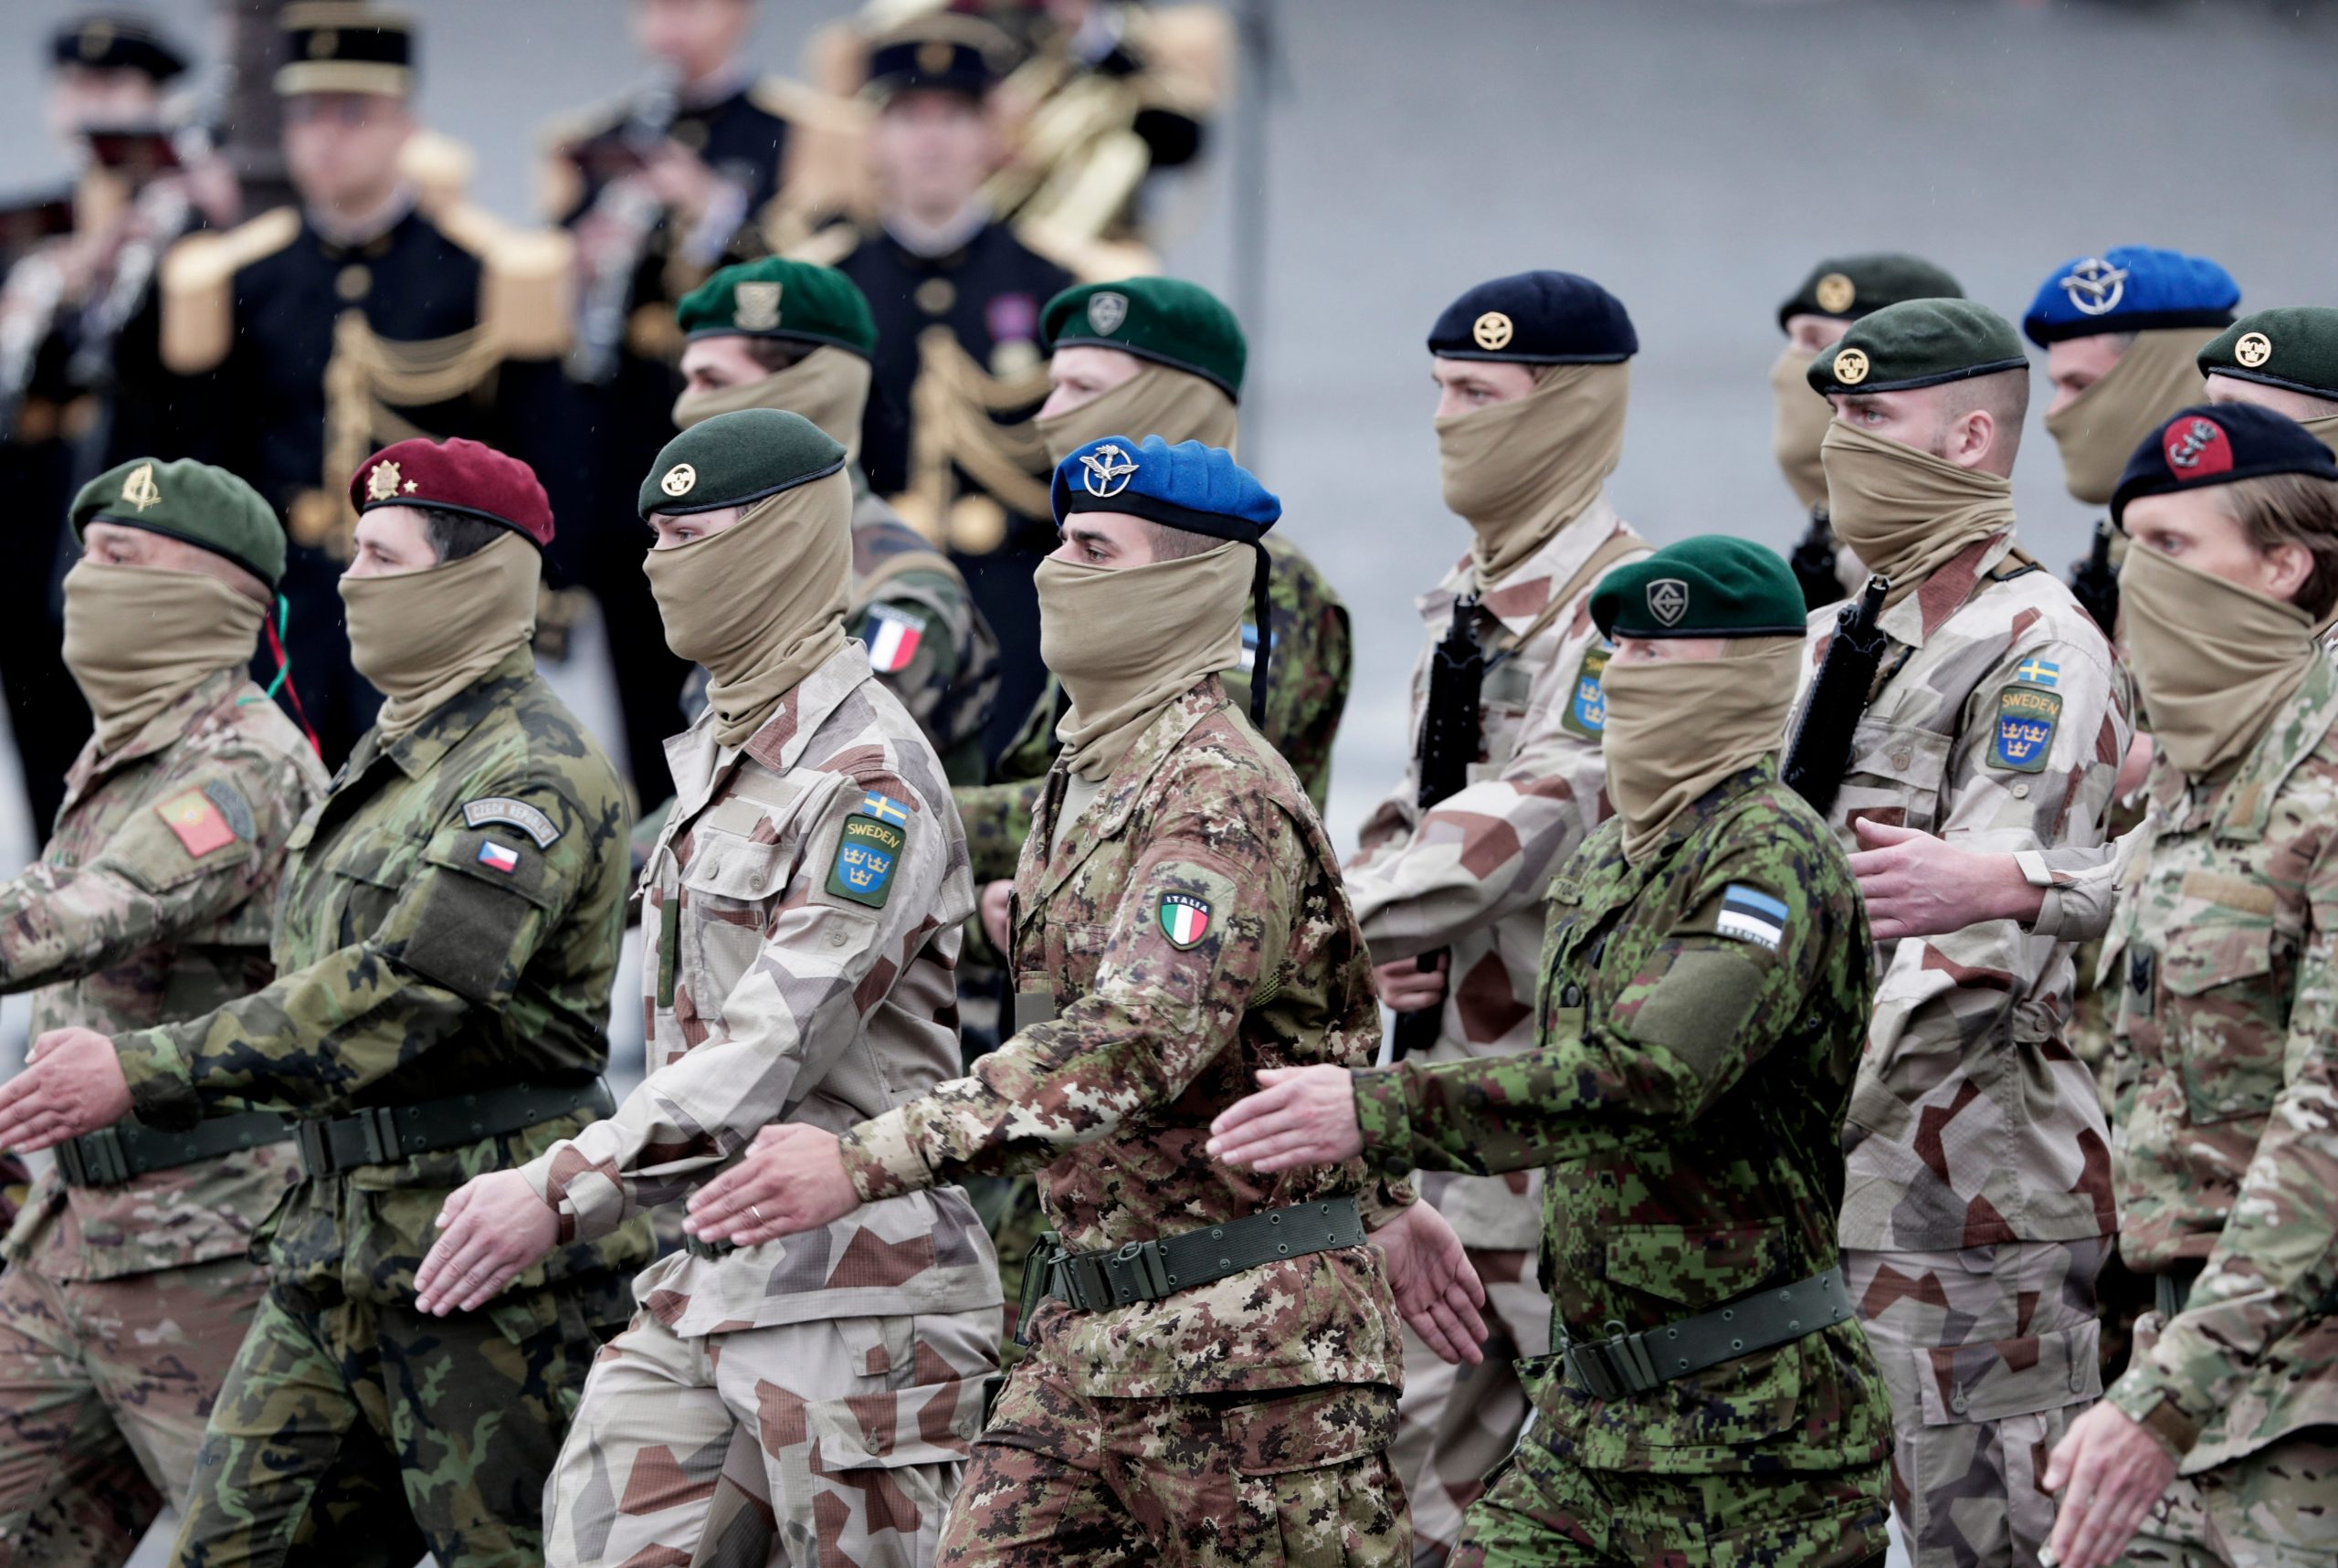 Basta una foto come questa per comprendere quanto la Difesa dell'UE sia diversificata tra Stato e Stato. Personale militare europeo sfila durante una parata, ognuno con la propria mimetica nazionale.